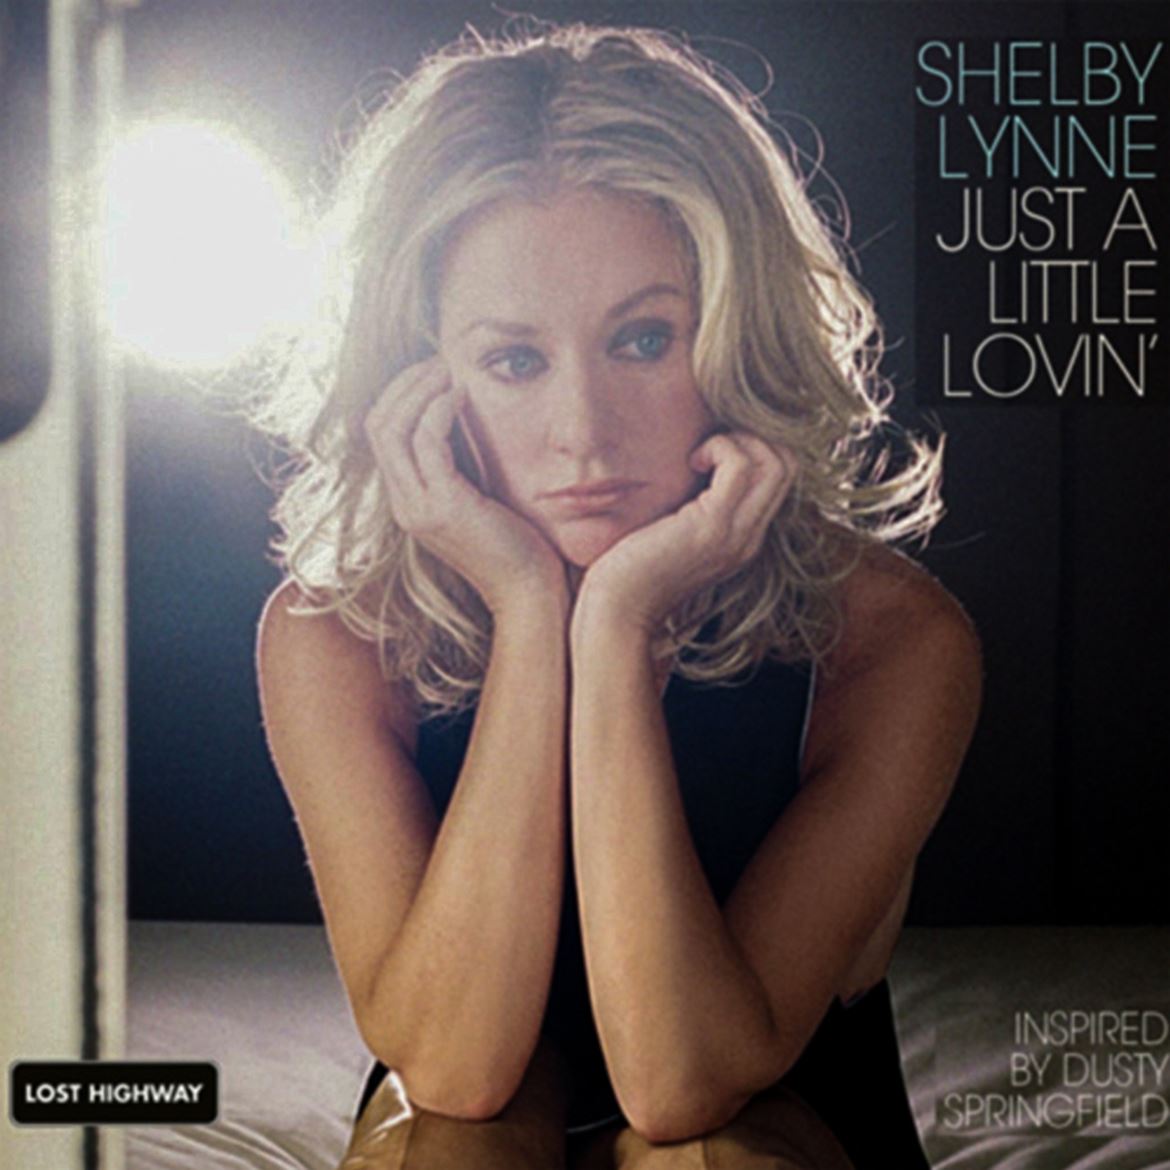 ‘Just a Little Loving’ de Shelby Lynne, é um álbum de homenagem a Dusty Springfield, que escapou à censura do MeToo